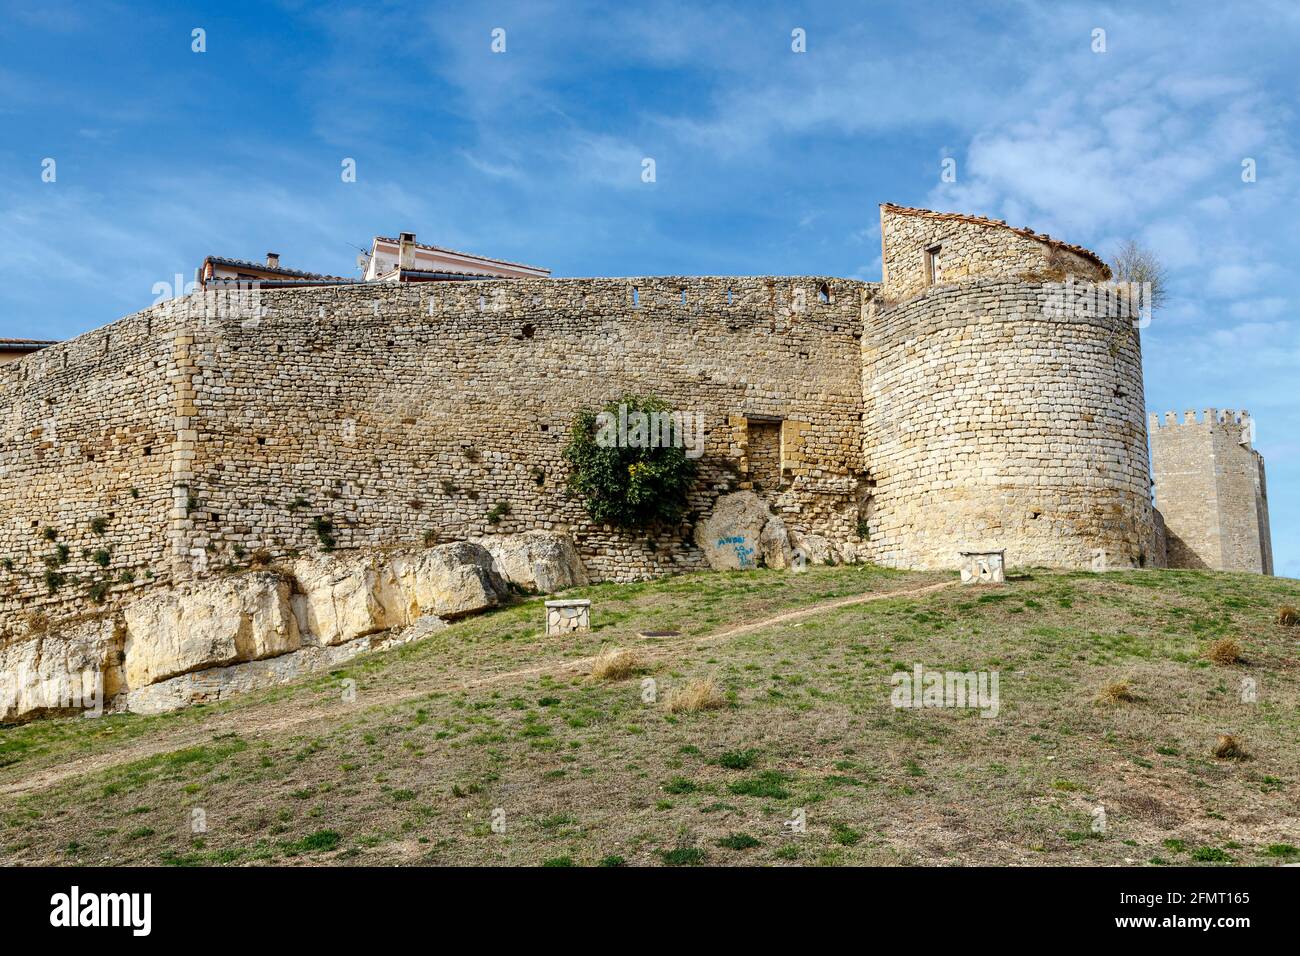 Morella in castellon Maestrazgo castle fort at Spain Stock Photo